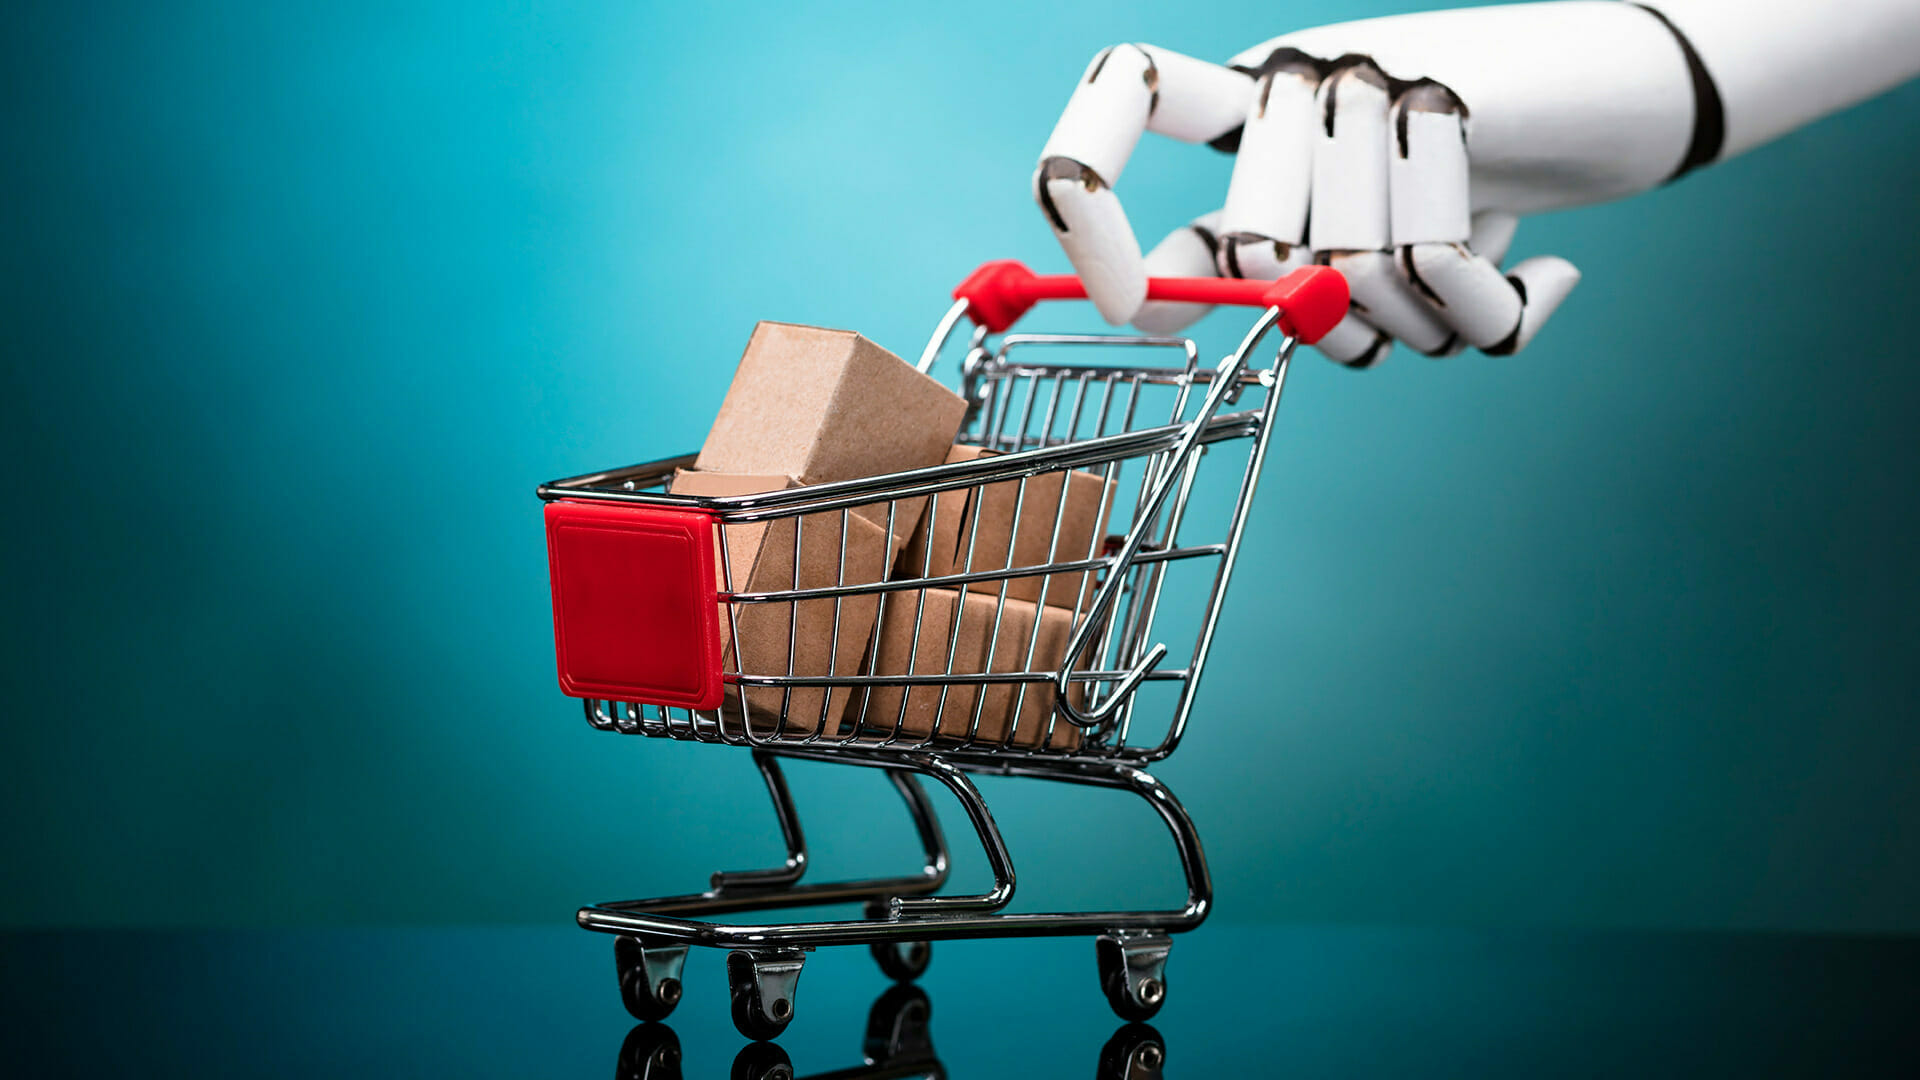 AI e-commerce and shopping